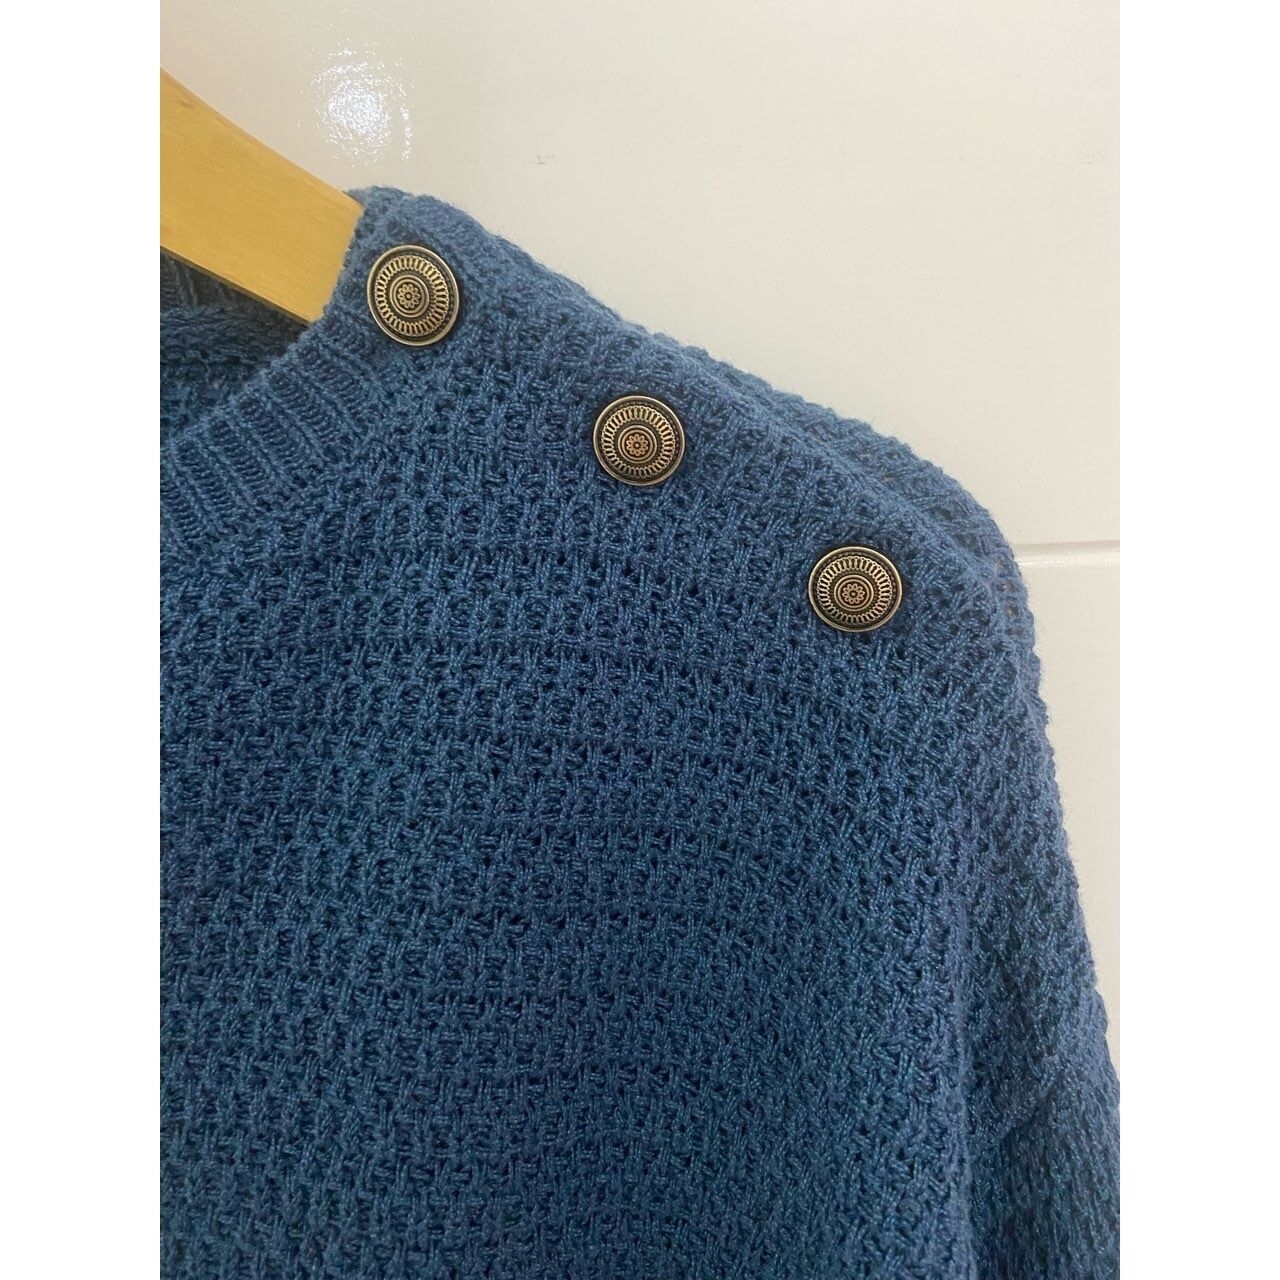 Zara Navy Crop Sweater